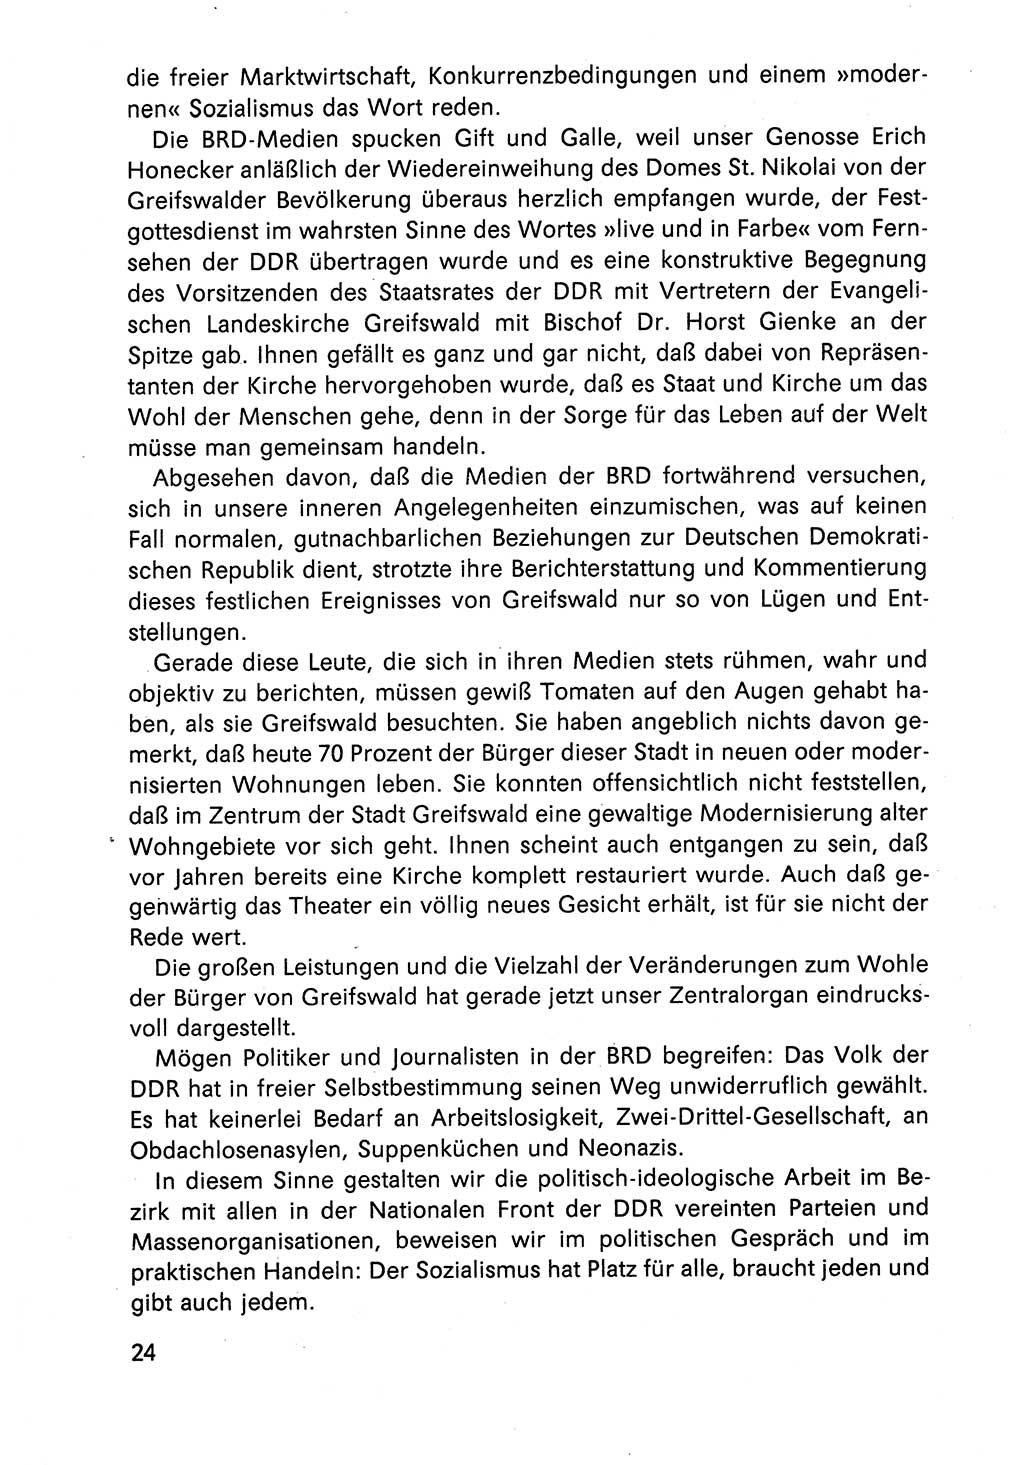 Diskussionsreden, 8. Tagung des ZK (Zentralkomitee) der SED (Sozialistische Einheitspartei Deutschlands) [Deutsche Demokratische Republik (DDR)] 1989, Seite 24 (Disk.-Red. 8. Tg. ZK SED DDR 1989, S. 24)